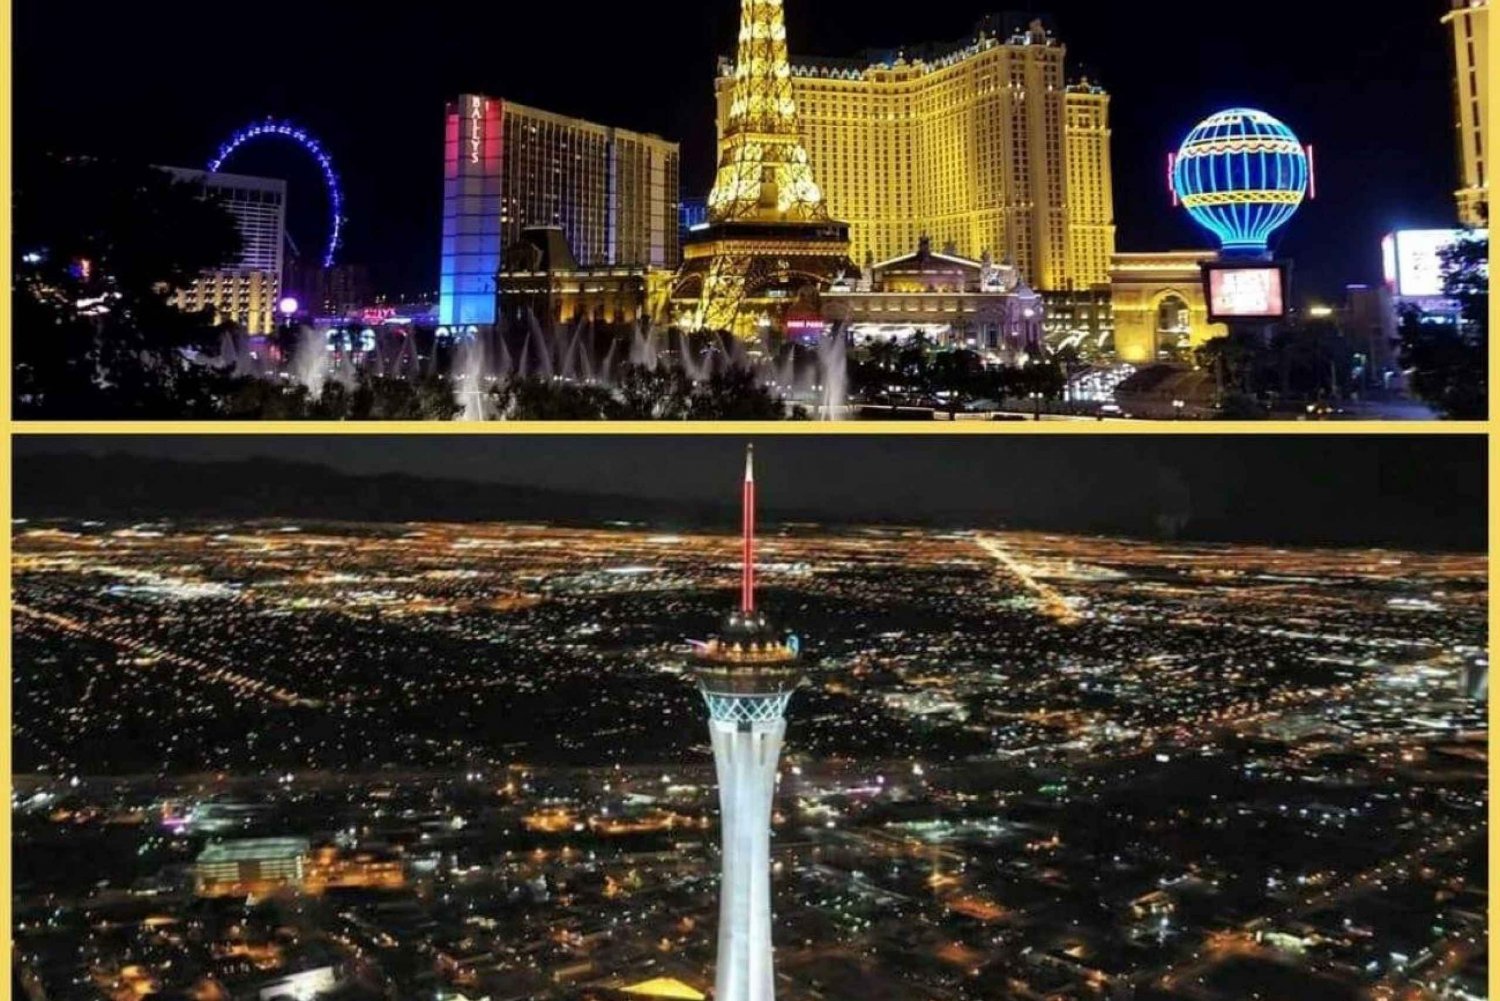 Las Vegasissa: Las Vegas: 3 yön polttarikokemus